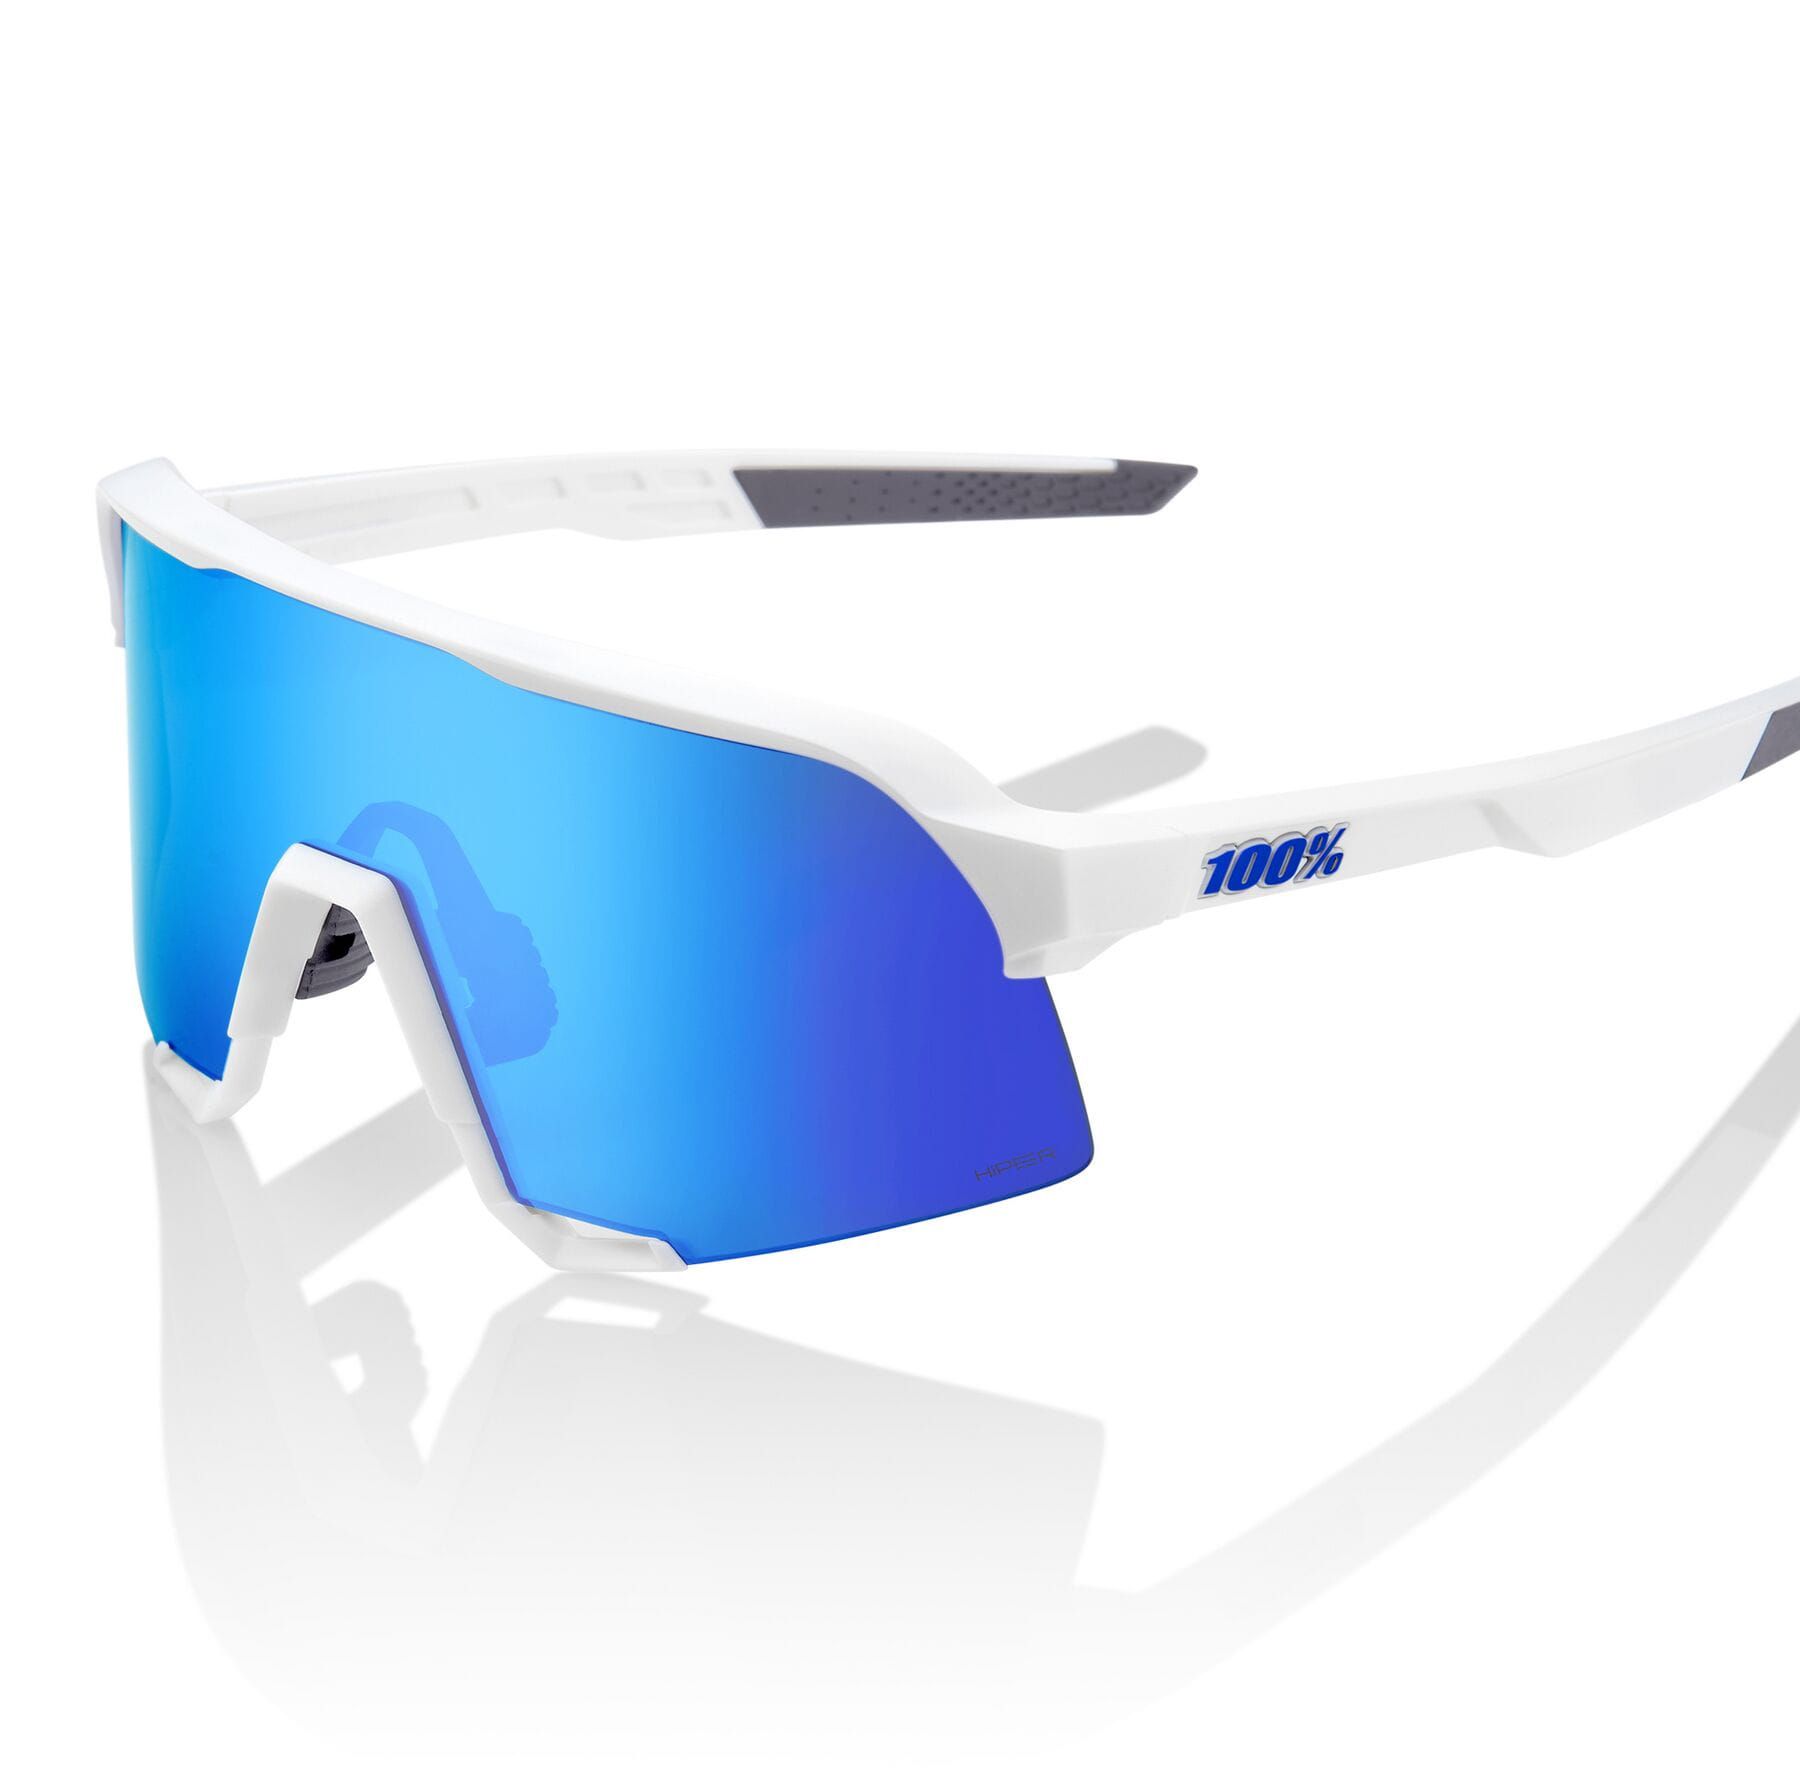 100% S3 Sunglasses Matt White/hiper Blue Mirror Lens - £125.99 | 100% ...